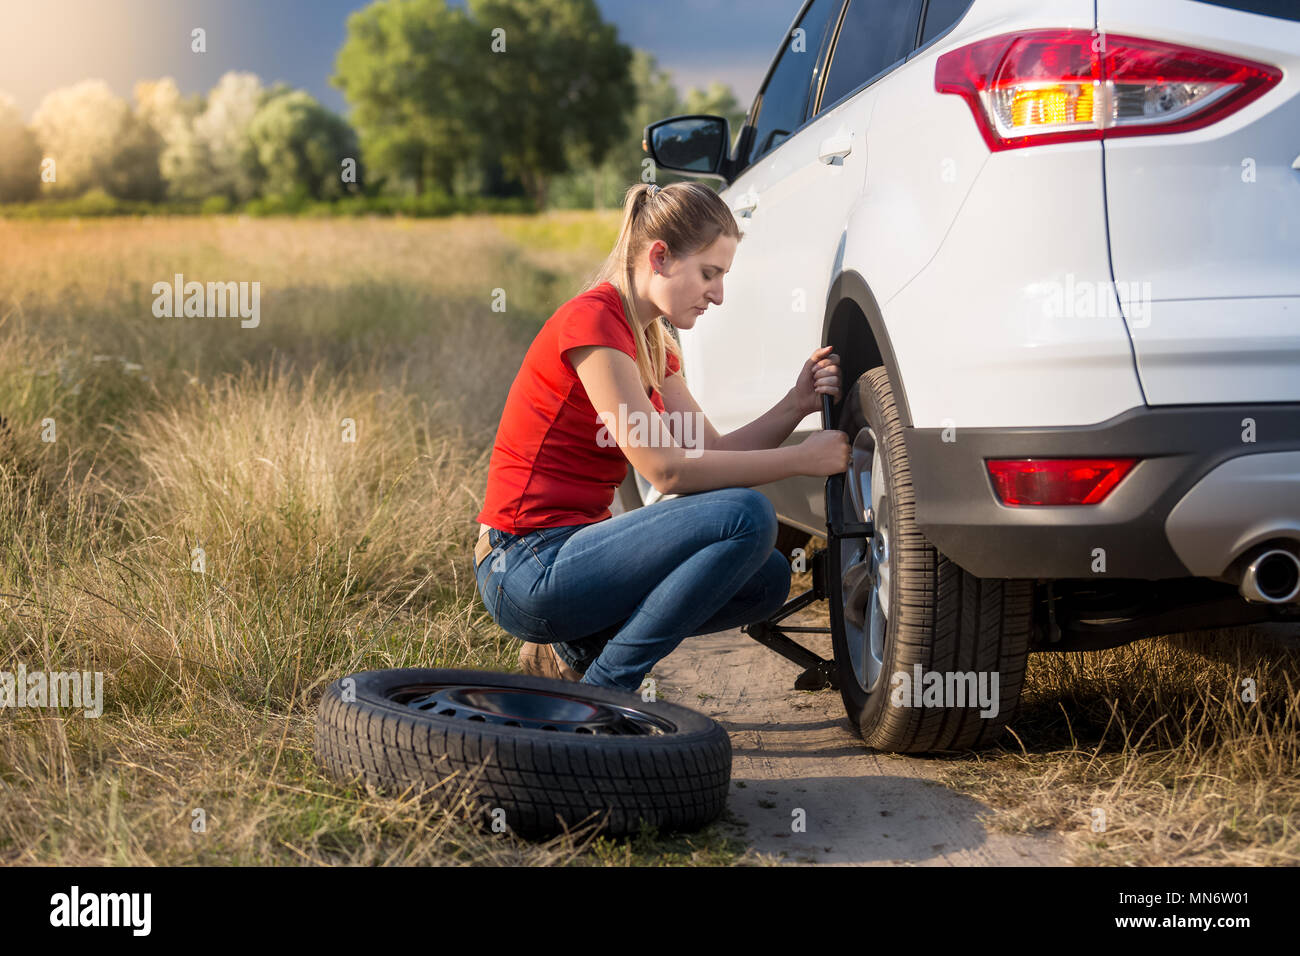 Jeune femme à l'aide d'un cric pour soulever sa voiture avec pneu plat et dévisser les écrous de roue Banque D'Images